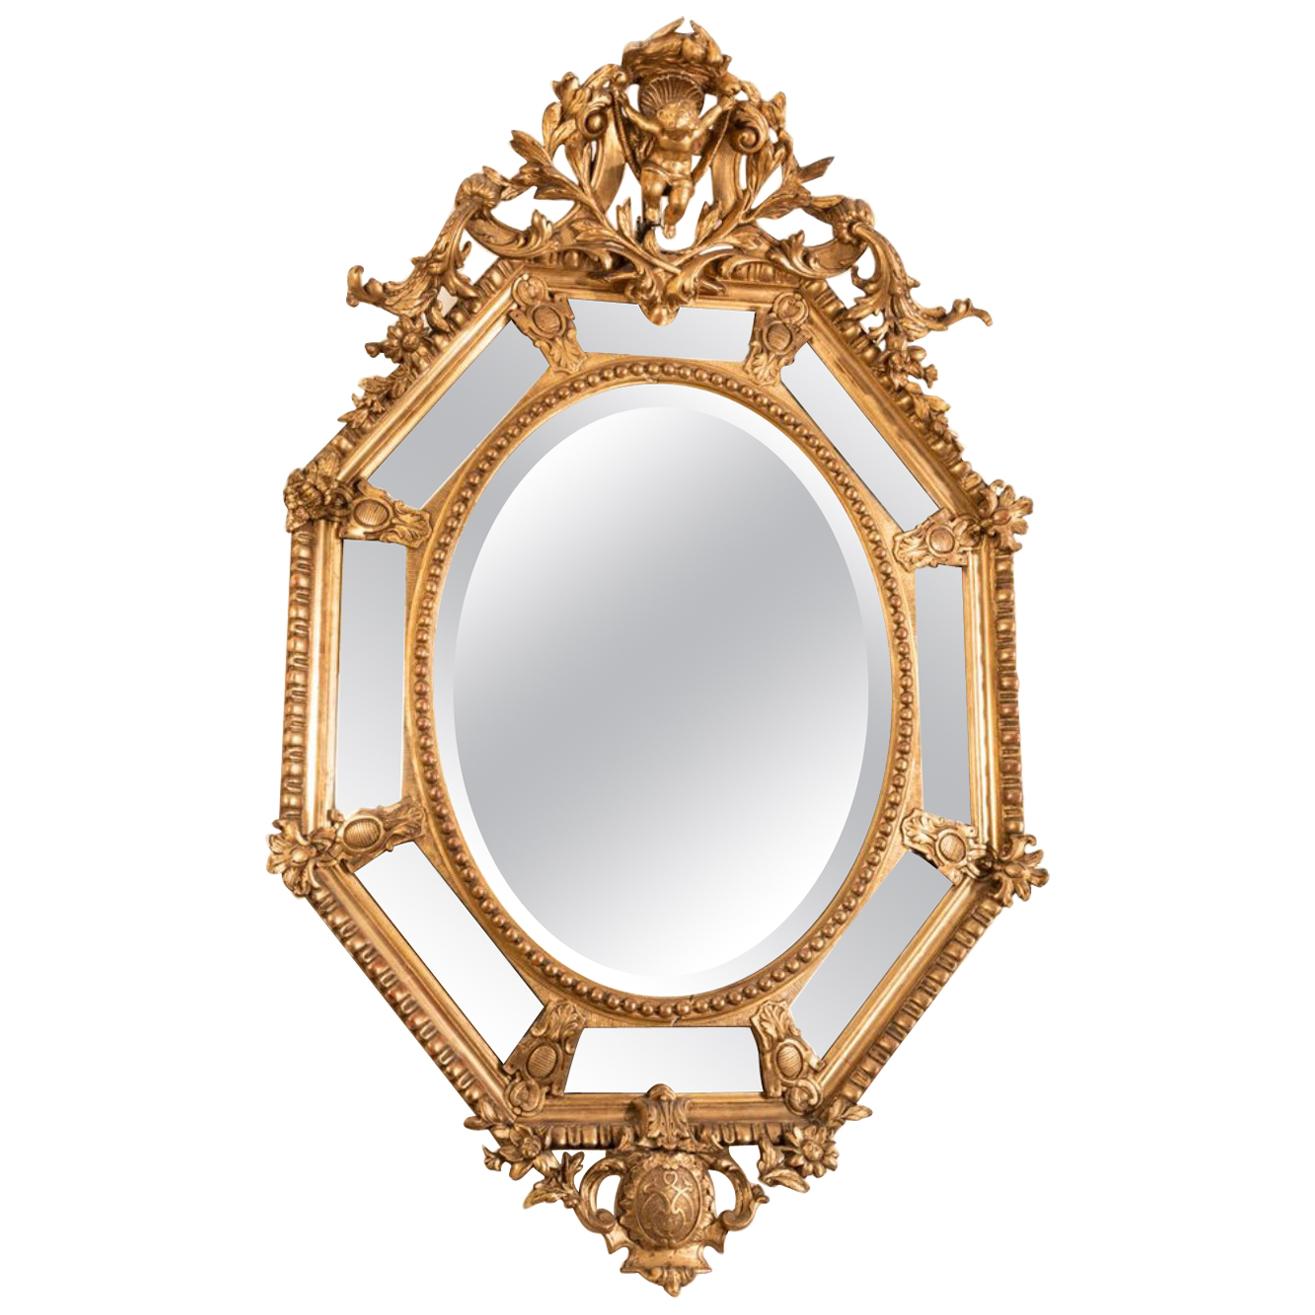 Grand miroir octogonal français en bois doré du 19ème siècle de la période Napoléon III